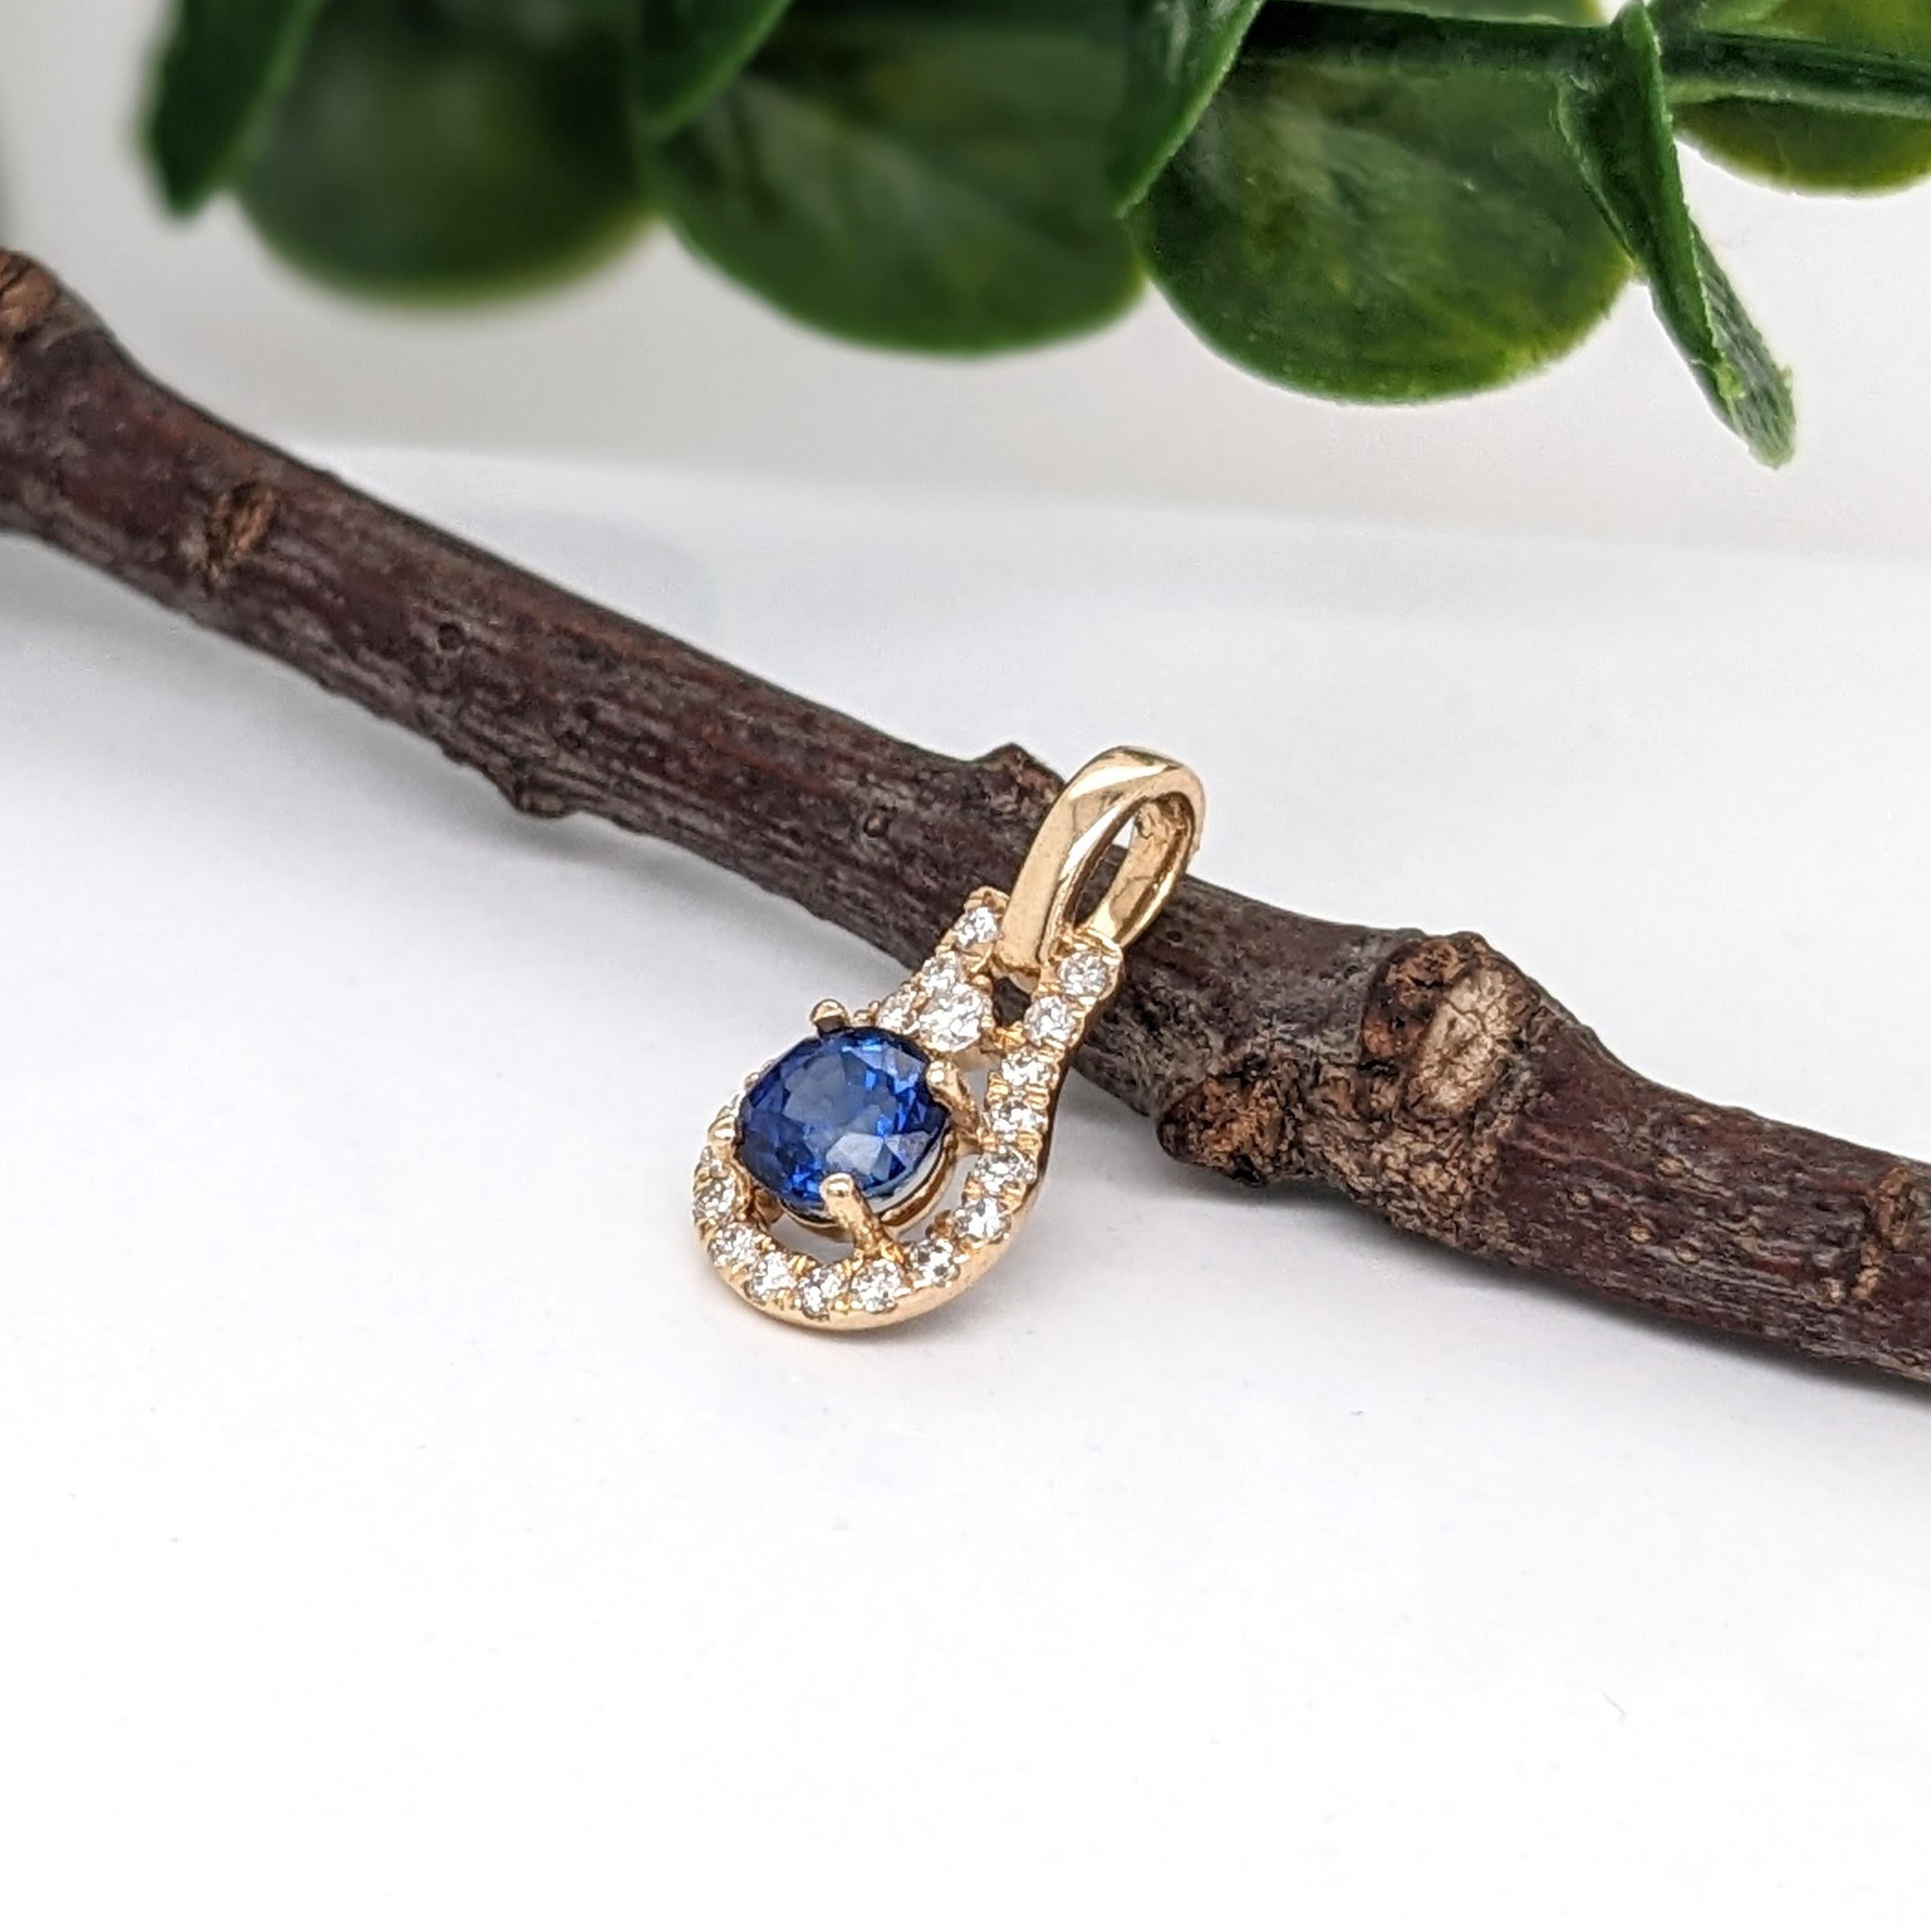 Ce pendentif en or massif 14 carats est le plus populaire de notre gamme. Il est orné d'un saphir bleu rond et d'accents de diamants naturels. Ce pendentif peut être un beau cadeau de pierre de naissance de septembre pour vos proches !